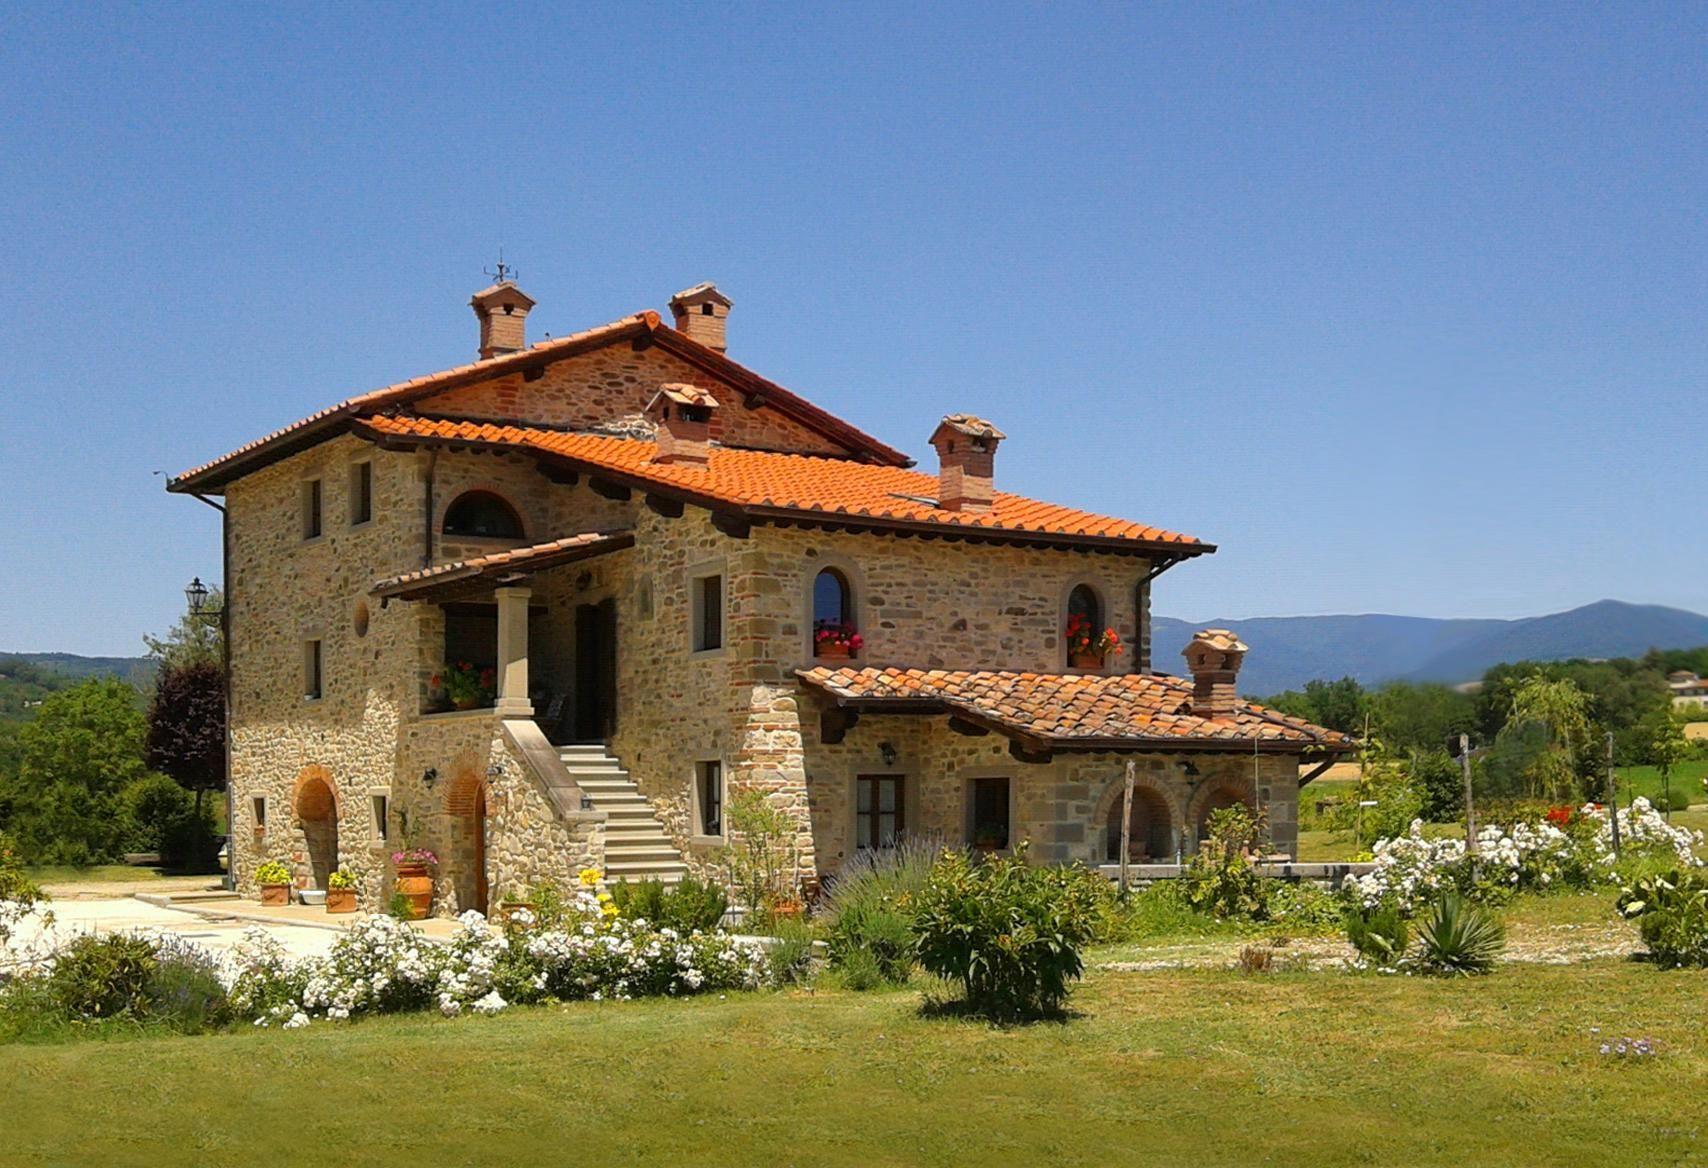 Ferienwohnung in einem toskanischen Landhaus, mit  Ferienhaus in Italien